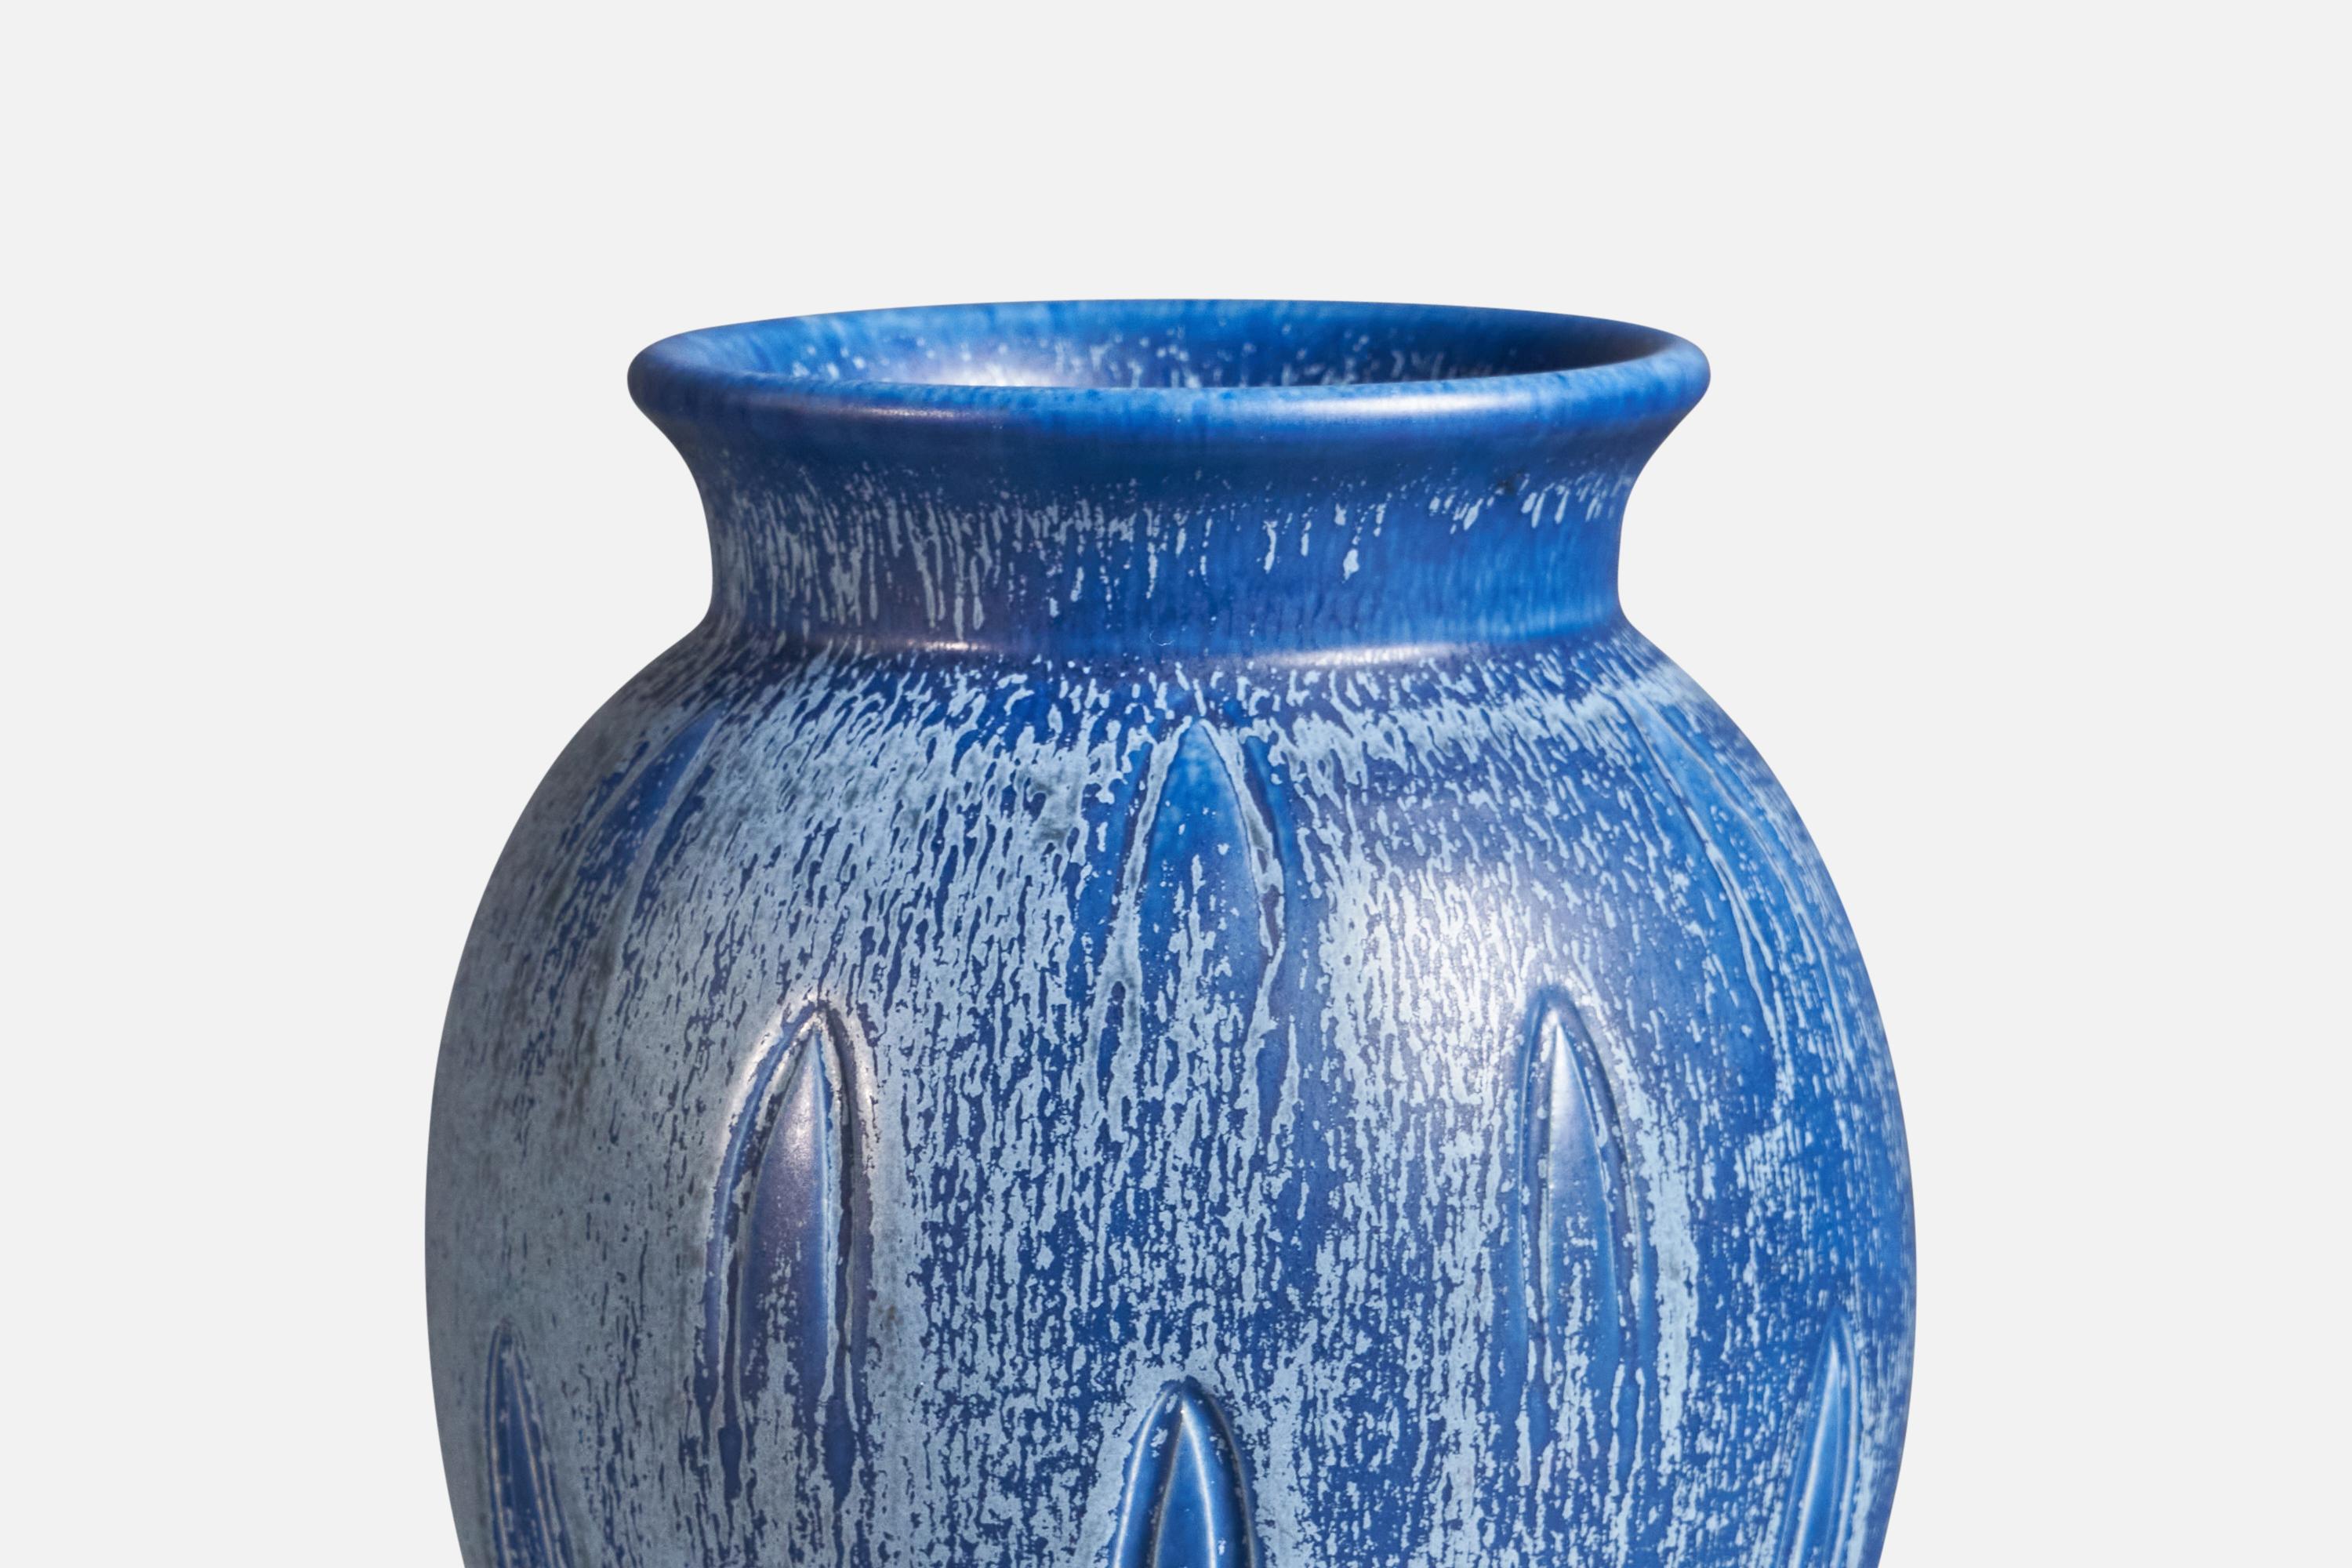 A blue-glazed and incised earthenware vase, designed by Eva Jancke-Björk, and produced by Bo Fajans, Sweden, c. 1940s.